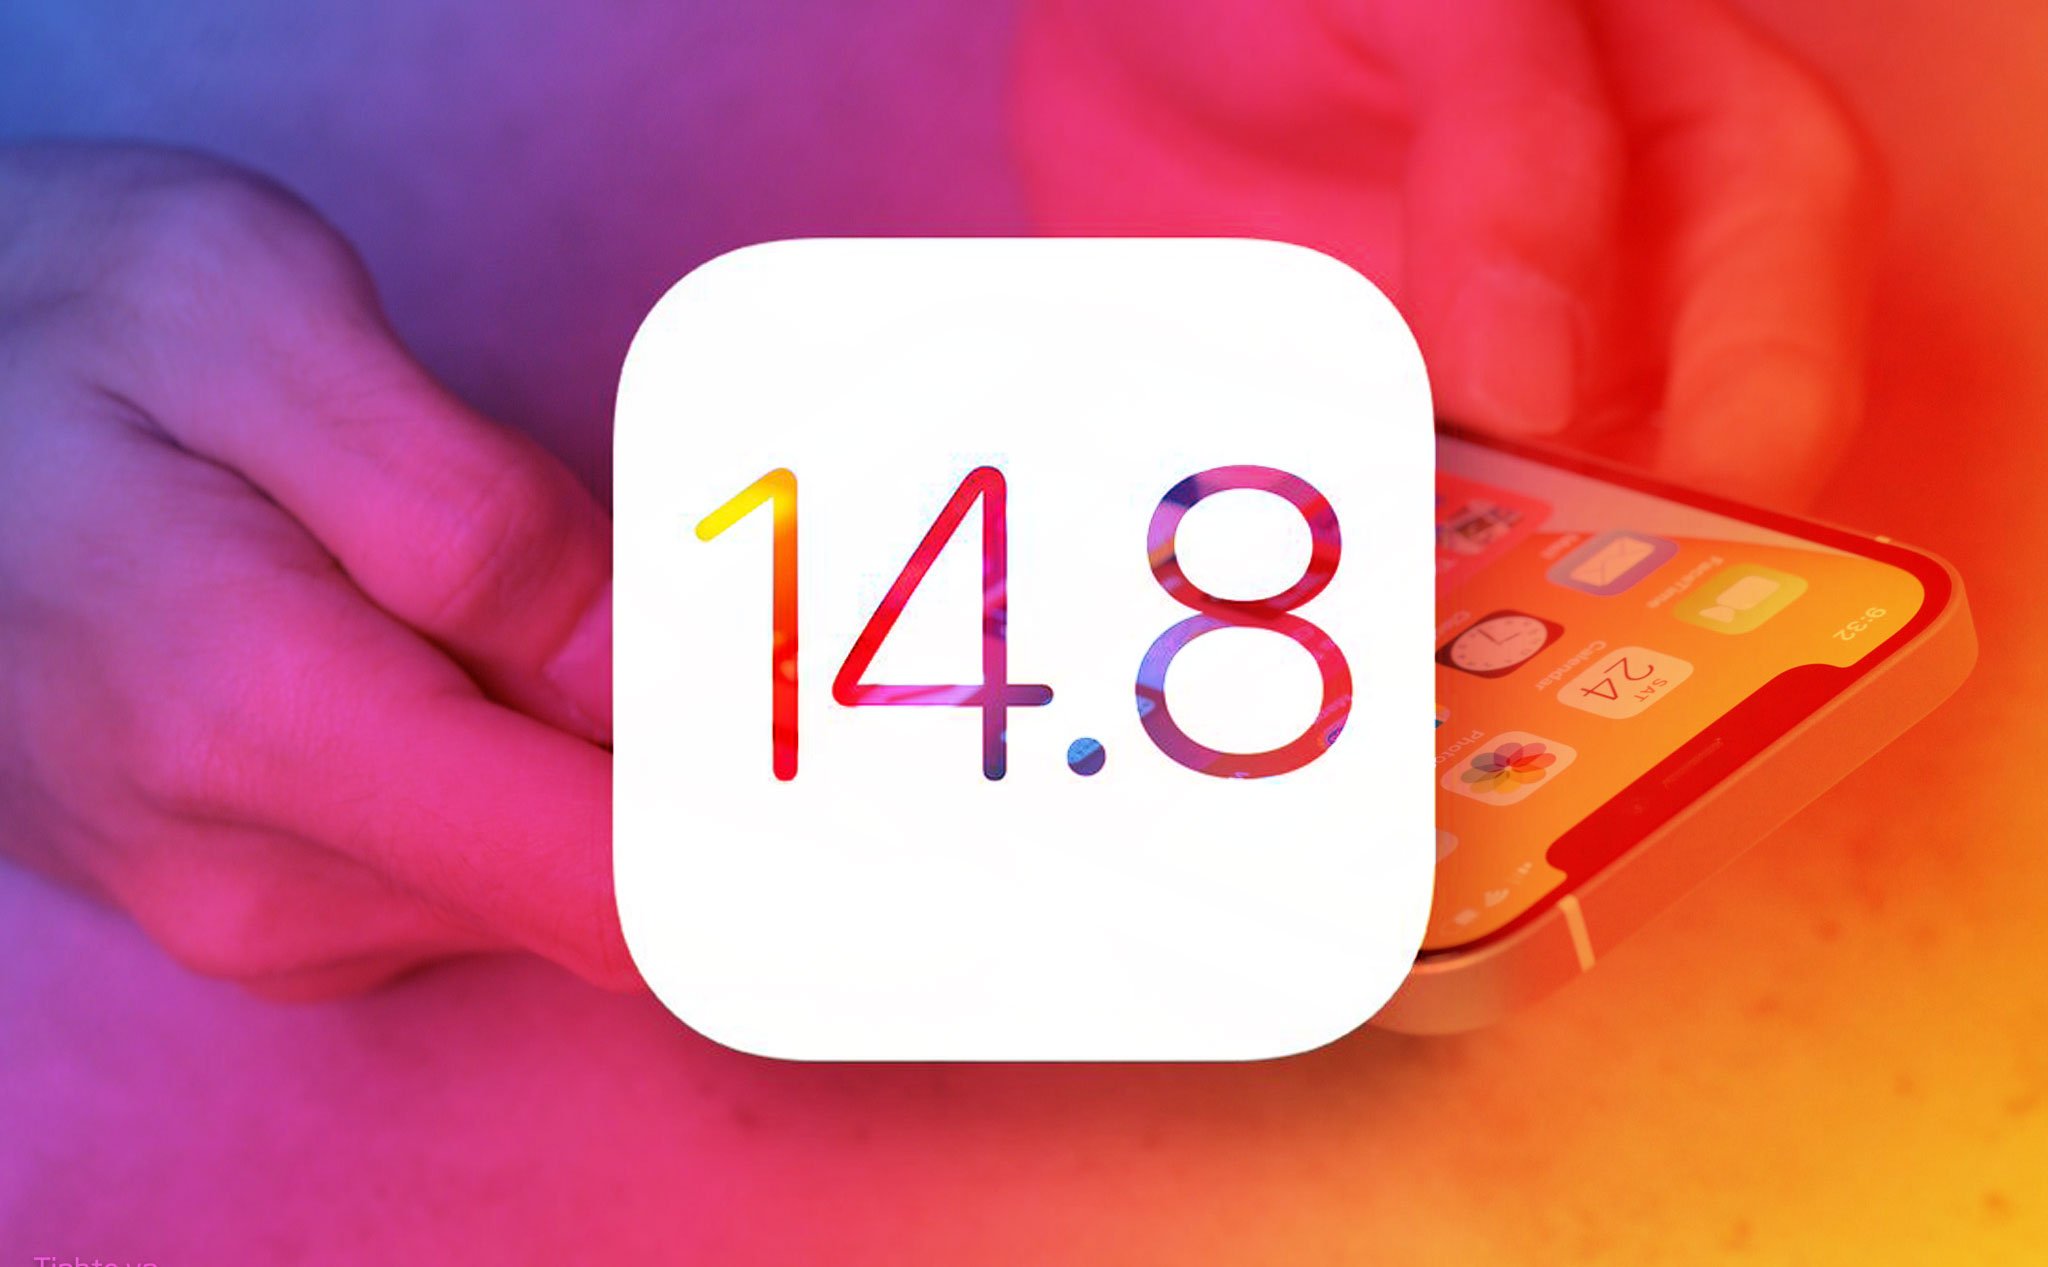 Bạn nên cập nhật lên iOS 14.8 ngay lập tức để không dính lỗ hổng bảo mật nghiêm trọng